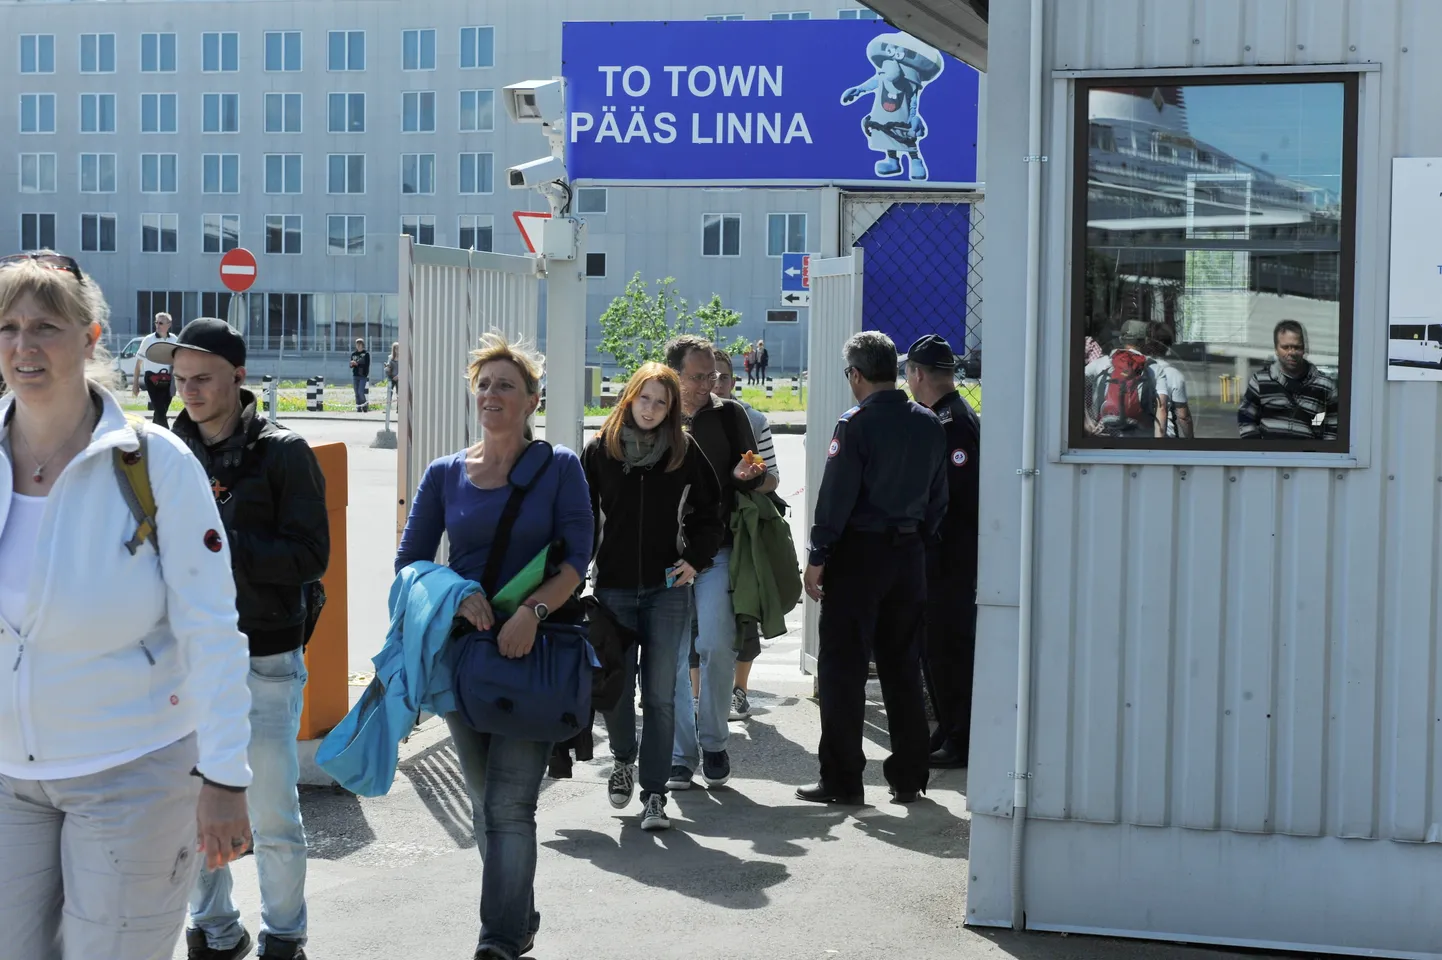 Saksa turistid saabuvad tagasi laevale Tallinnas kruiisilaevade kai ääres peatuvale laevale.